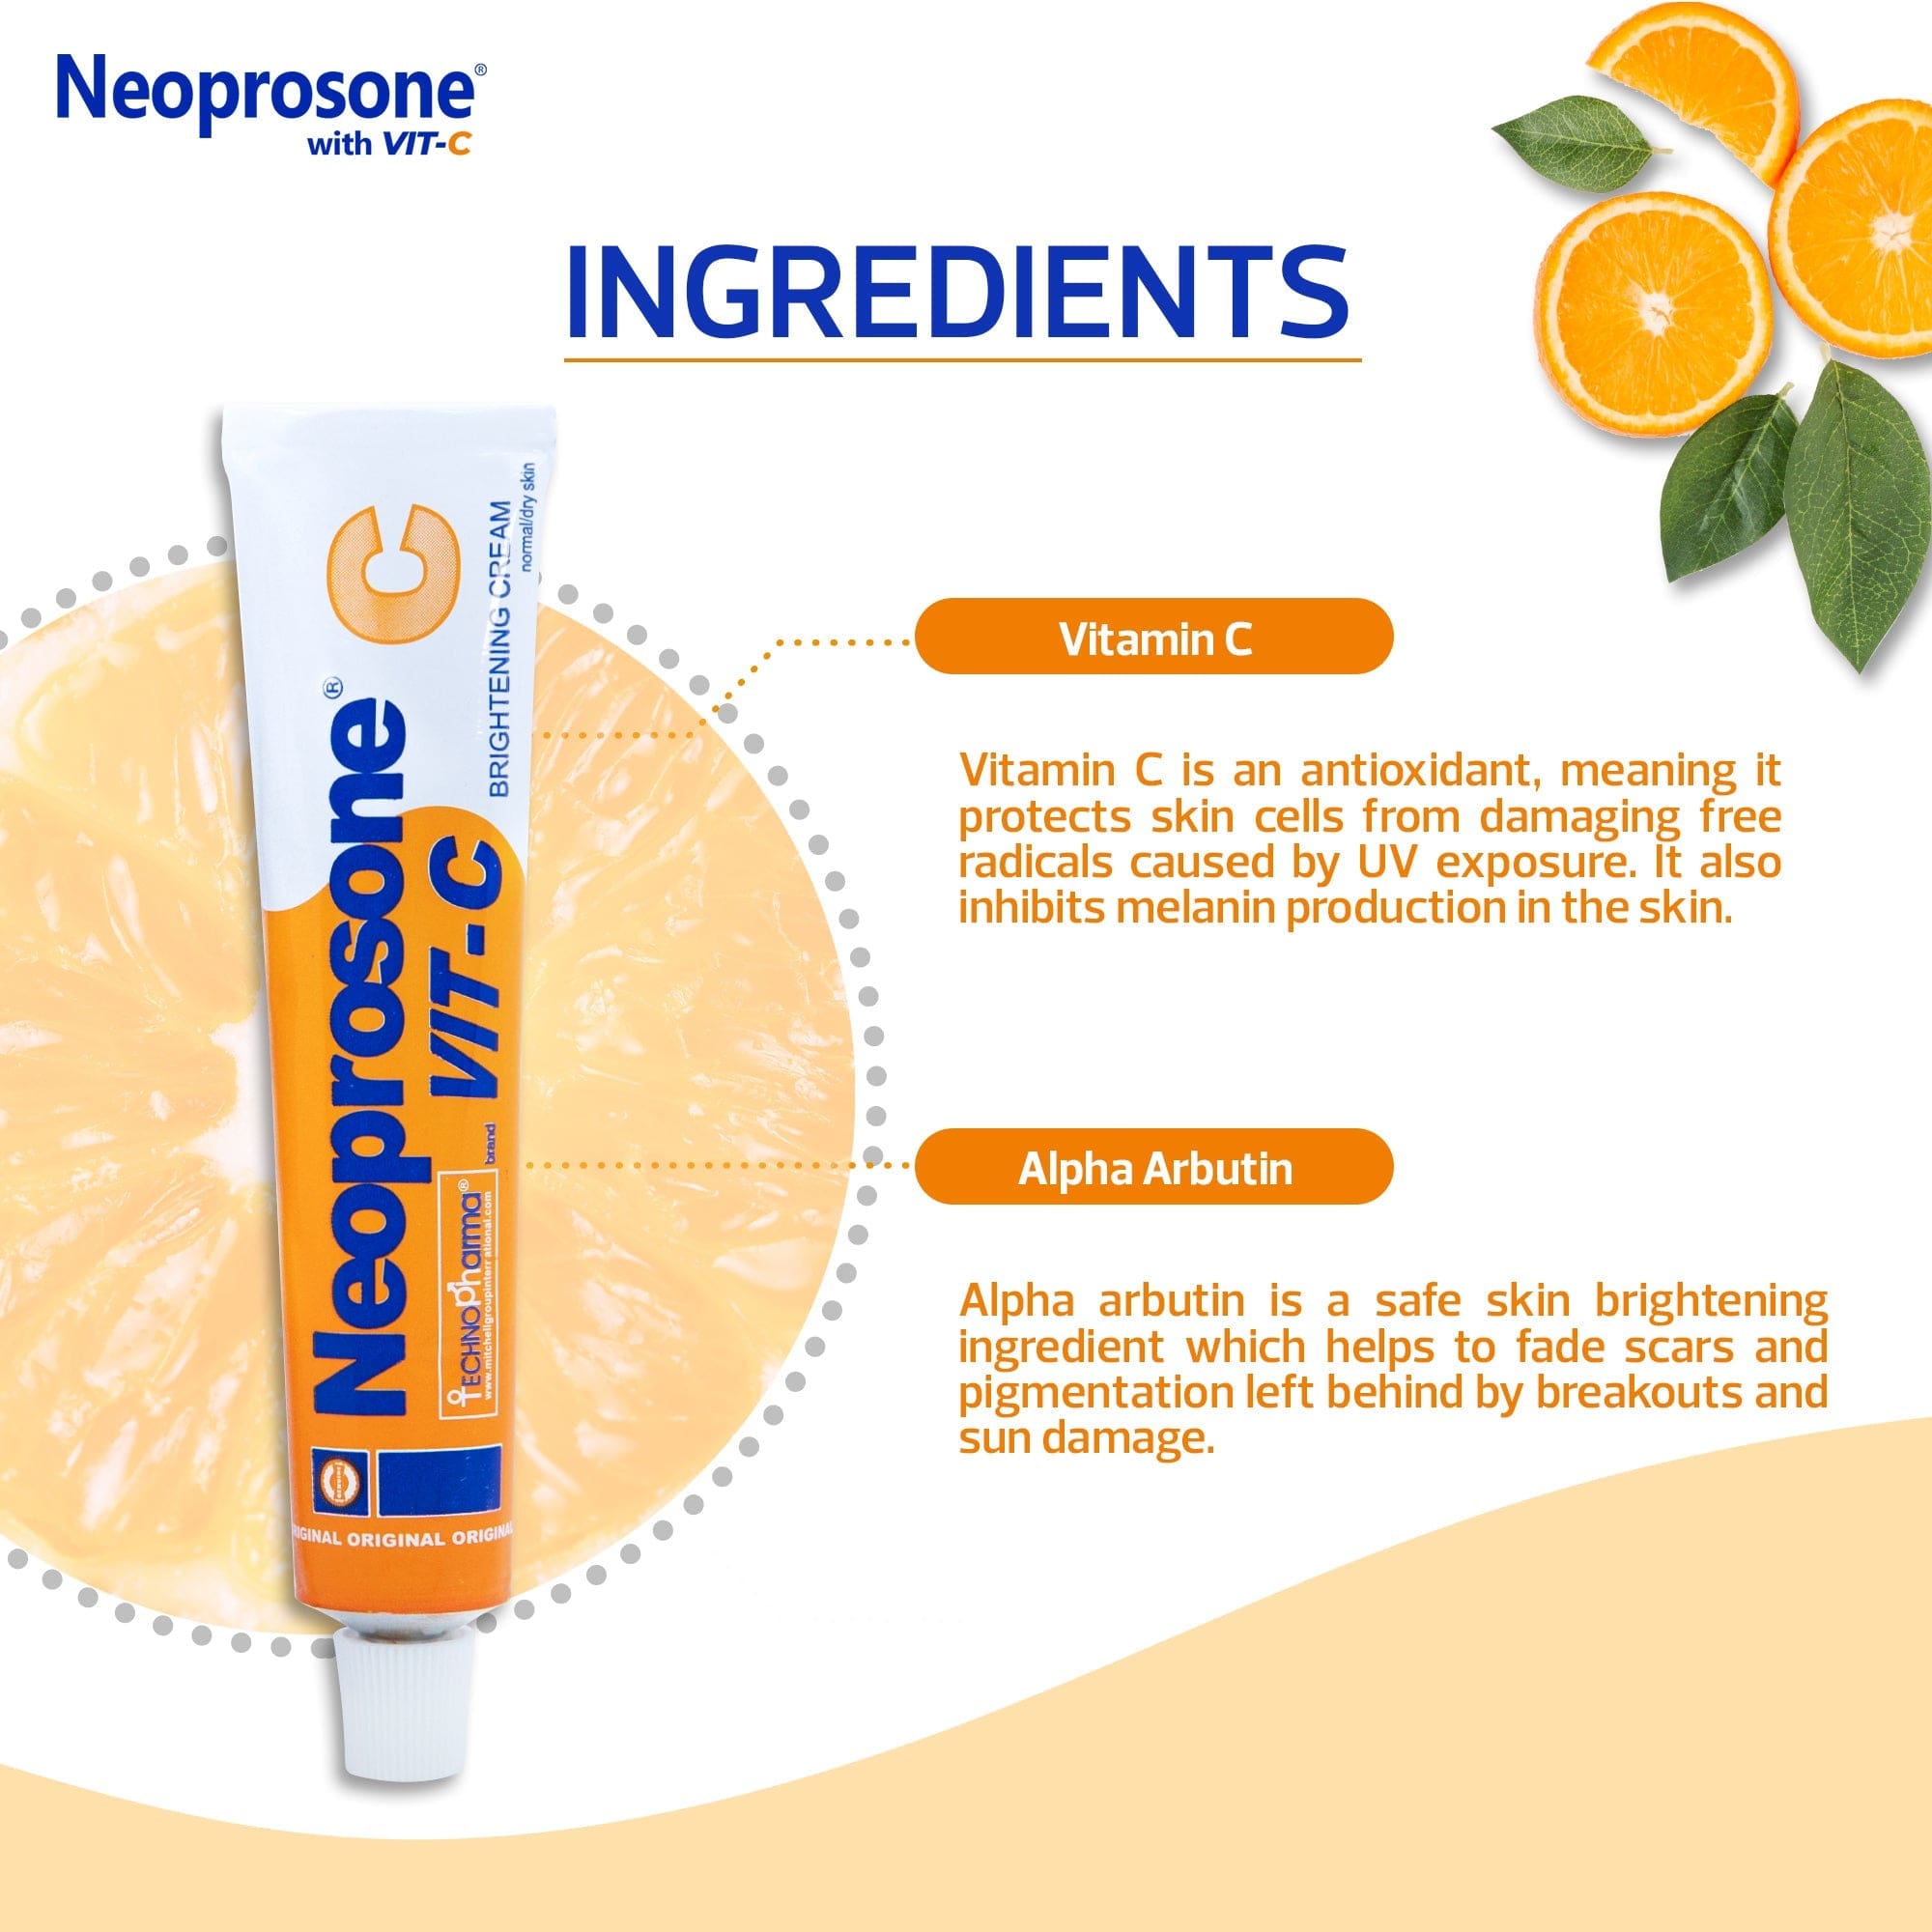 Neoprosone Brightening Cream with Vitamin C - 50g / 1.75 Fl Oz Neoprosone Vitamin "C" - Mitchell Brands - Skin Lightening, Skin Brightening, Fade Dark Spots, Shea Butter, Hair Growth Products